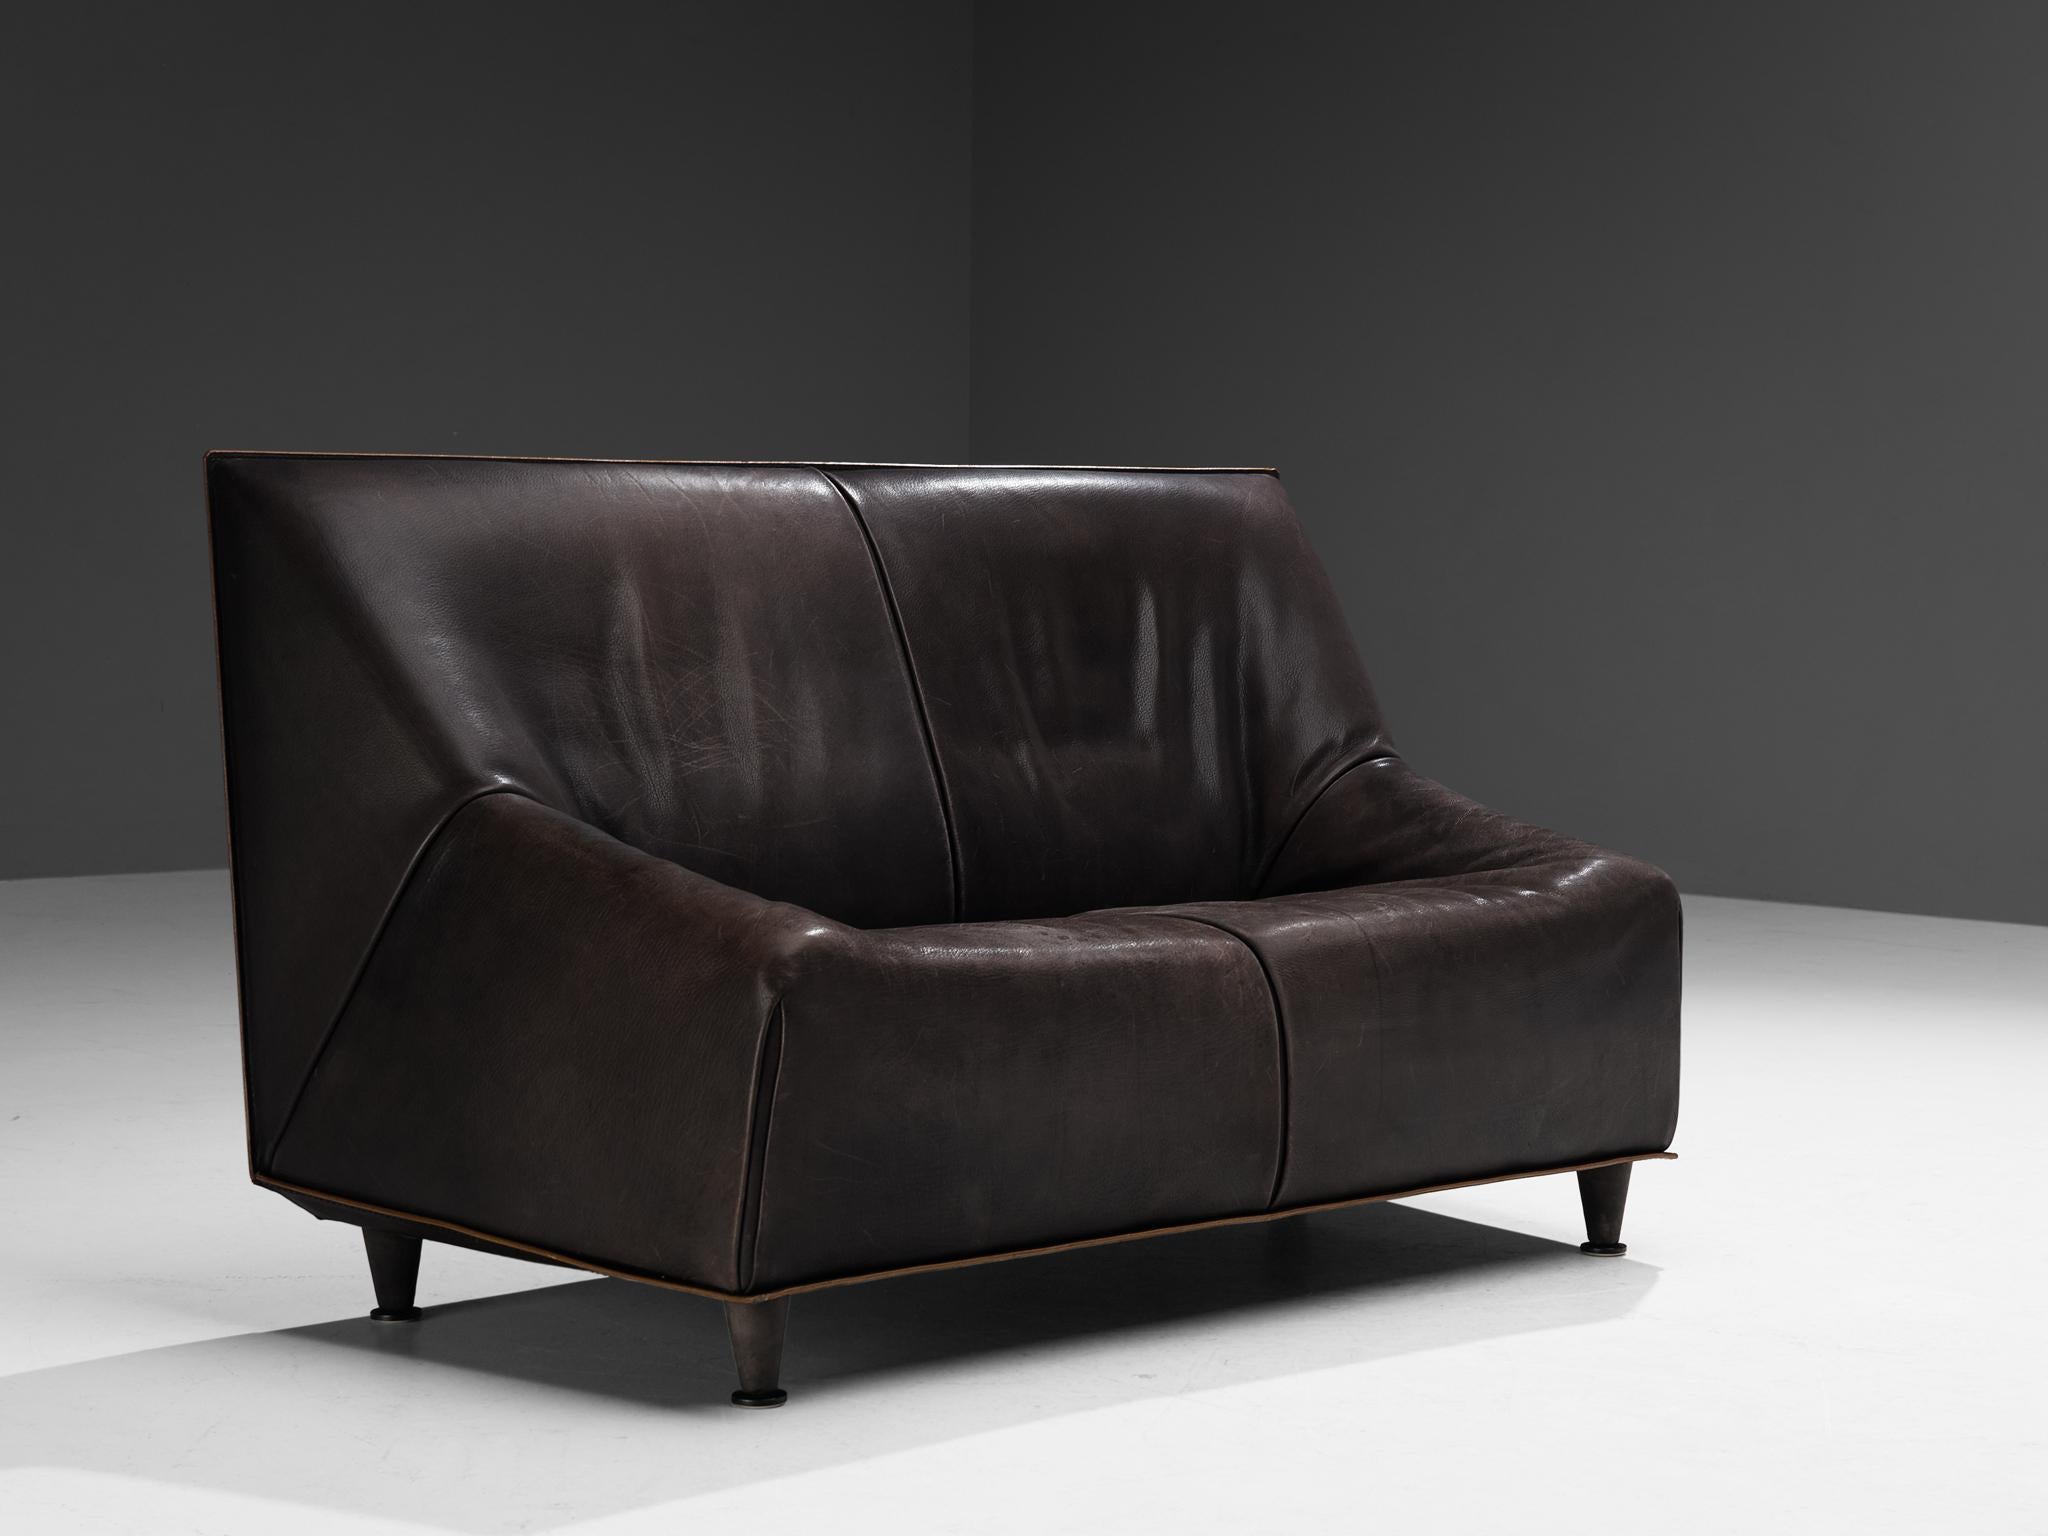 Sofa oder Sofagarnitur, Büffelleder, Metall, Dänemark, 1960er Jahre. 

Dieses Sofa stammt aus Dänemark und zeichnet sich durch eine kubisch geformte Konstruktion aus, die vollständig in Büffelleder mit bewundernswerter Patina ausgeführt ist. Der